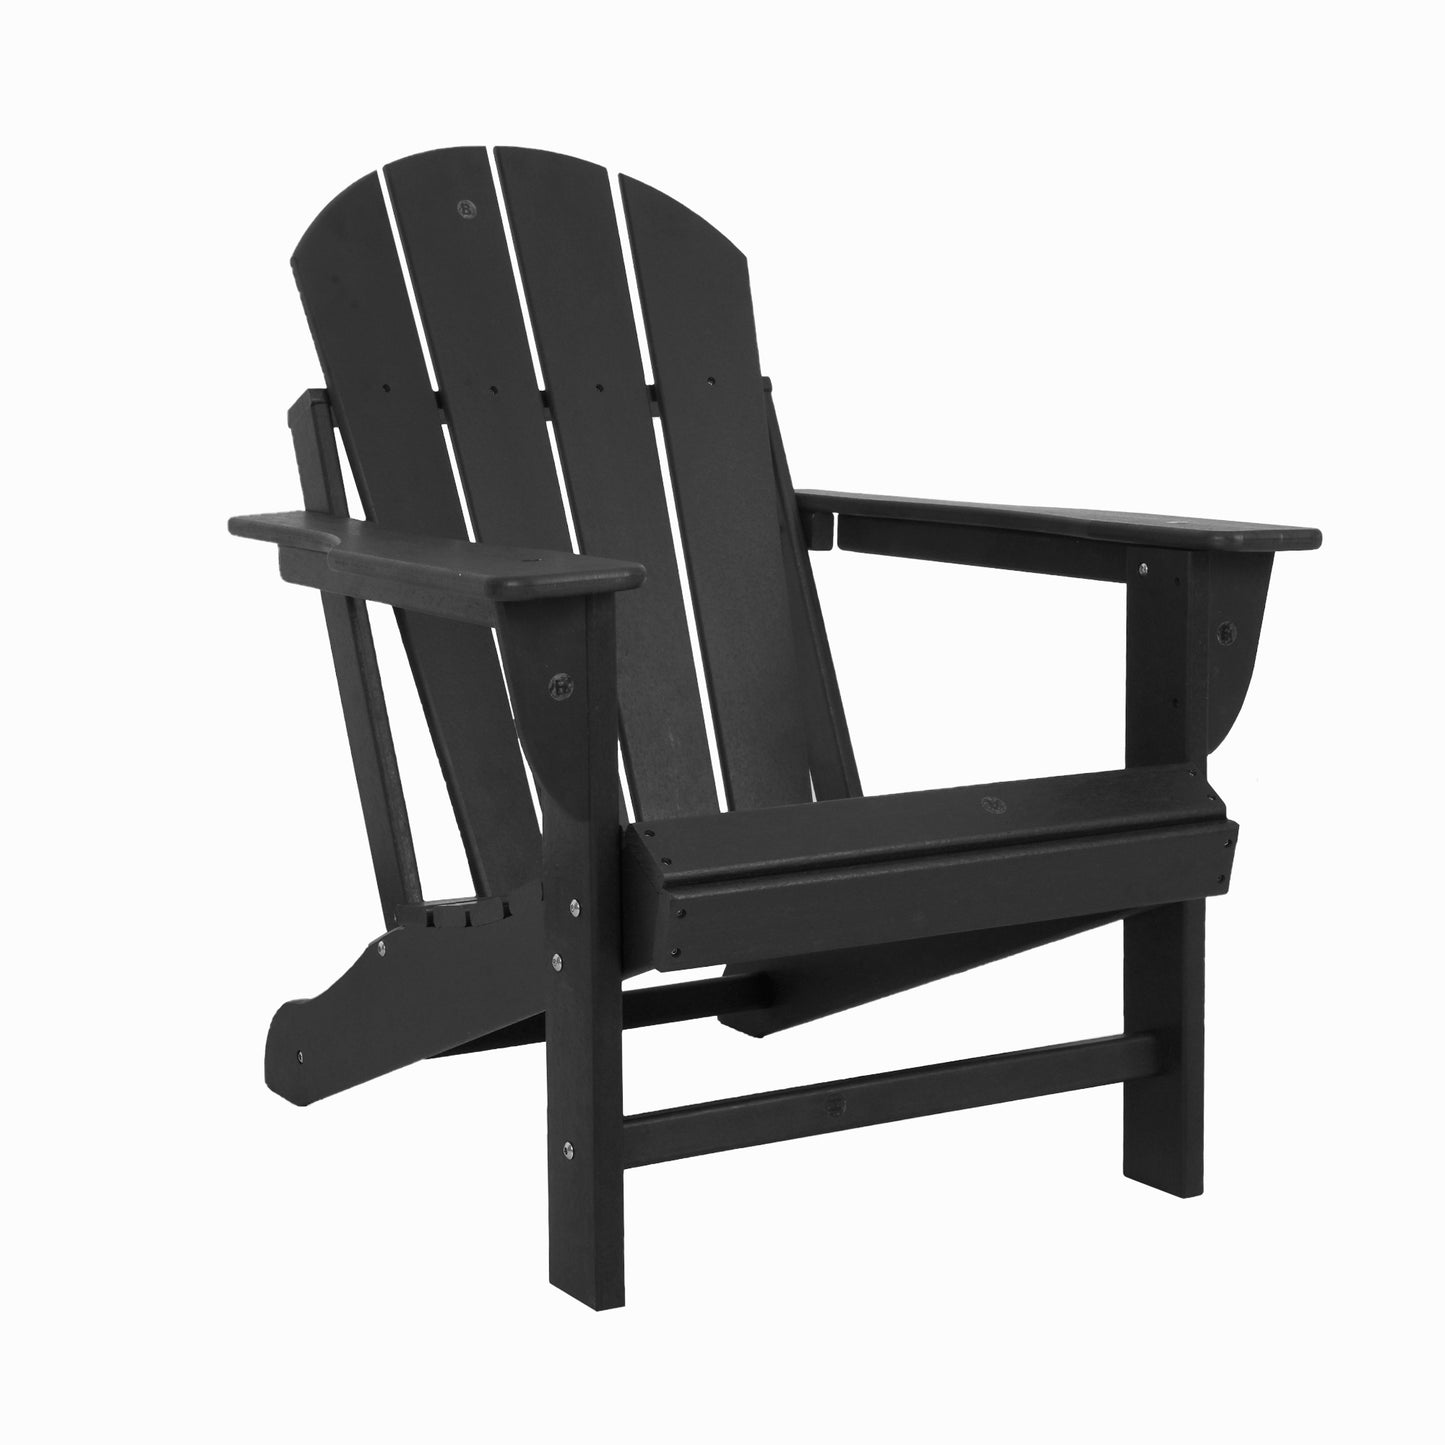 Waytrim Solid Wood Adirondack Chair